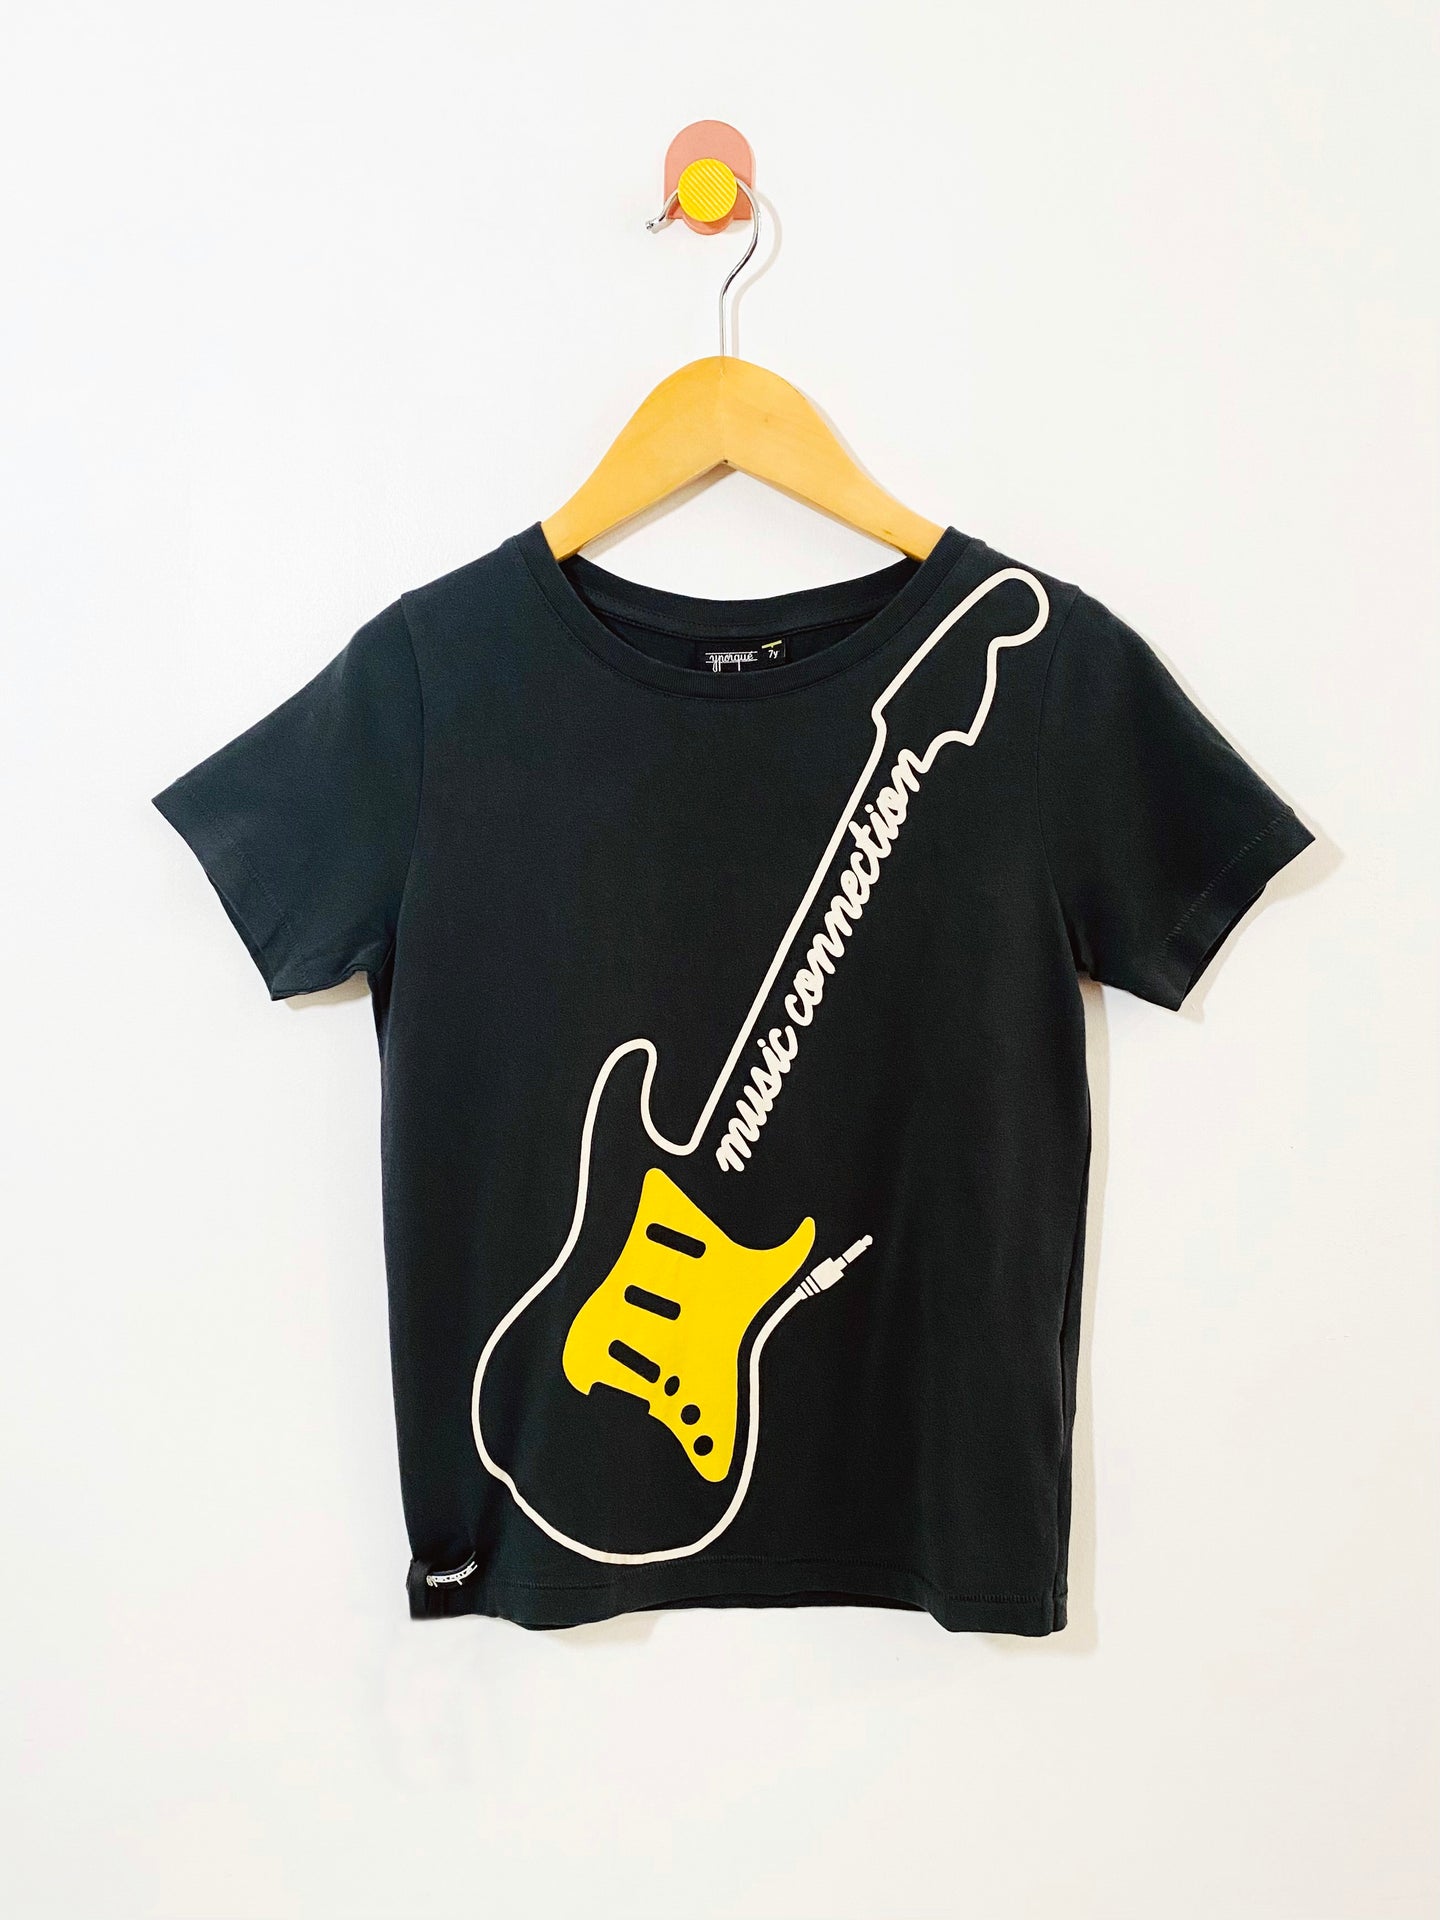 Yporque guitar t-shirt / 7Y